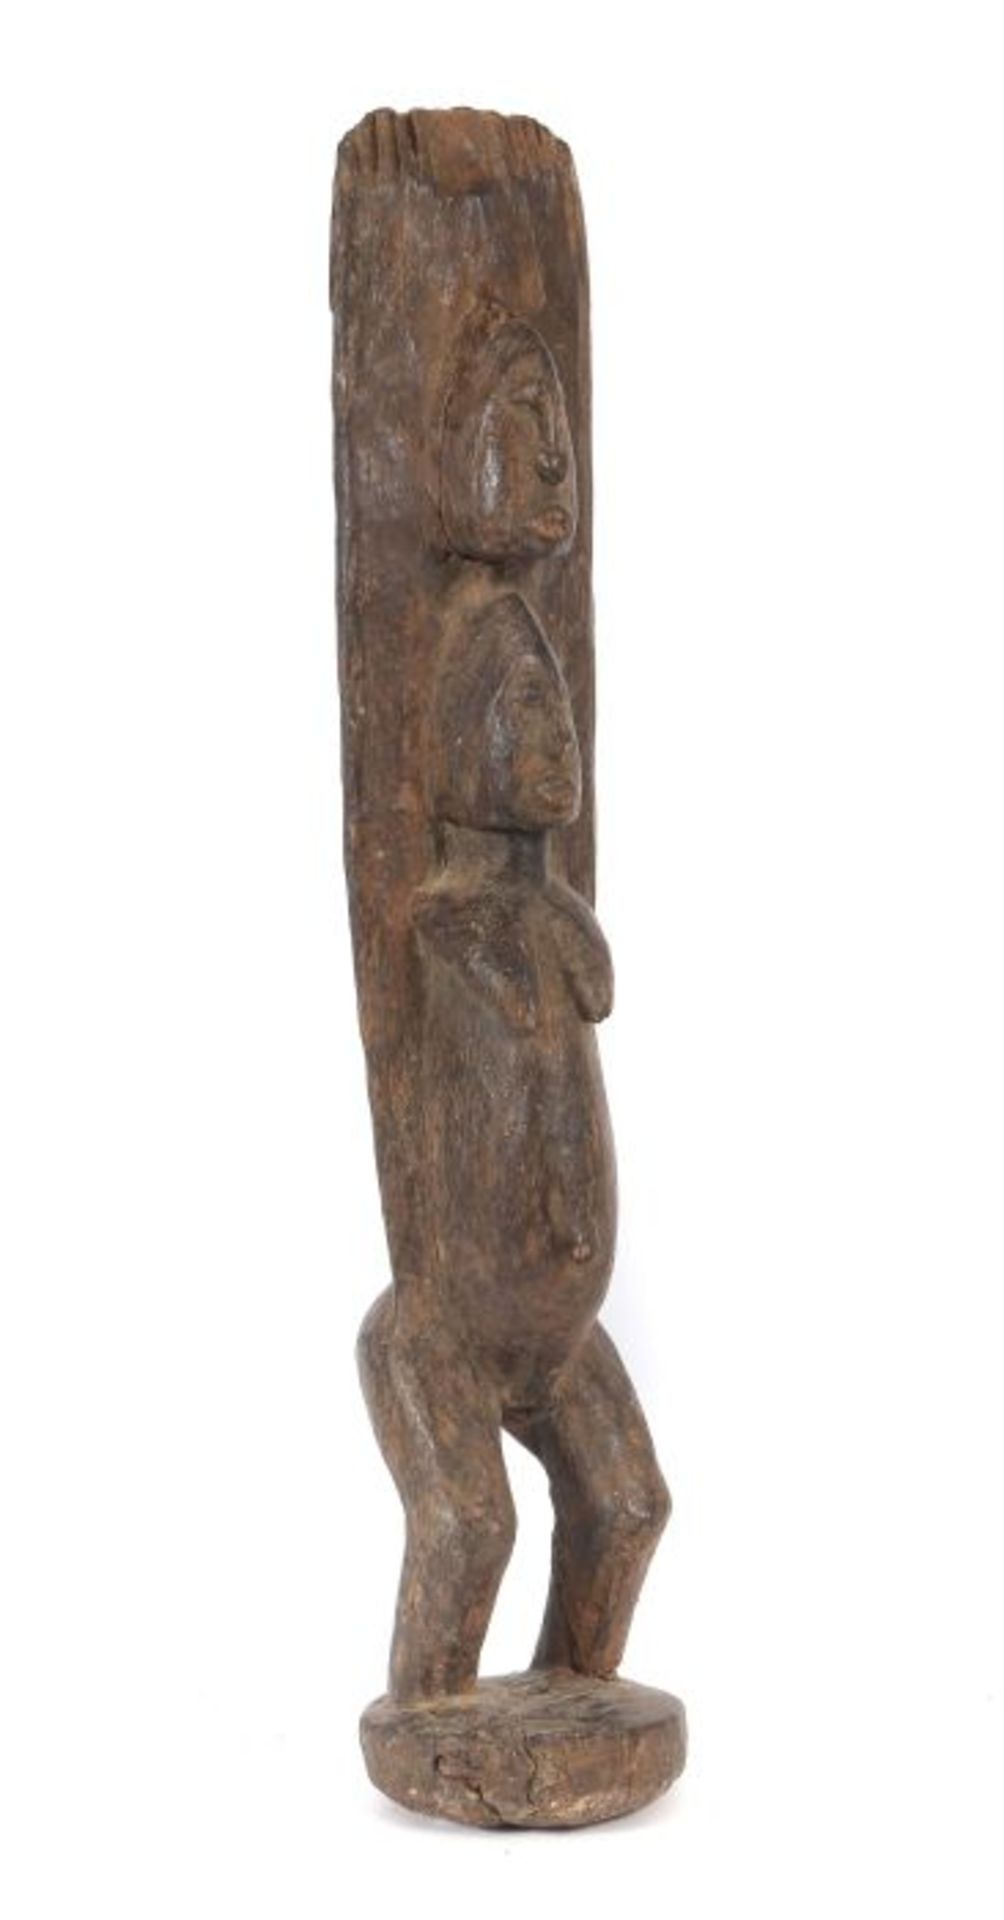 Standfigur der DogonMali, Holz, mit zwei übereinanderstehenden Köpfen H: 52 cm.- - -25.00 % buyer'